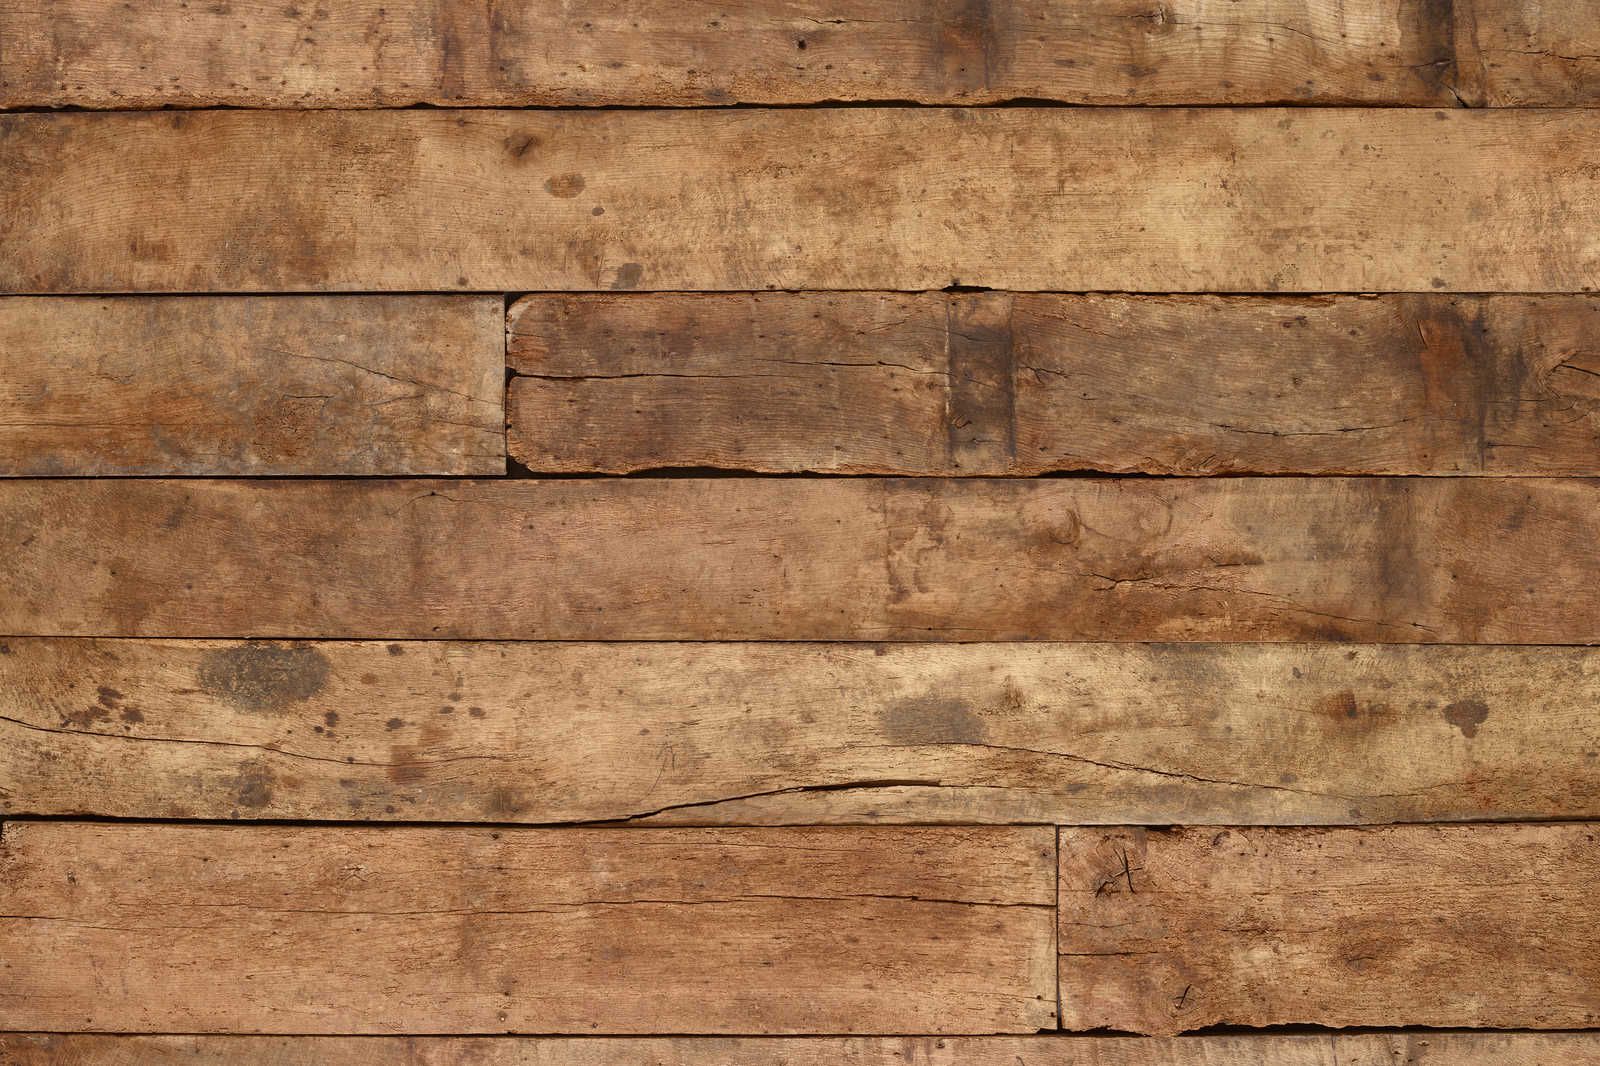             Tableau toile planches de chêne foncé - 0,90 m x 0,60 m
        